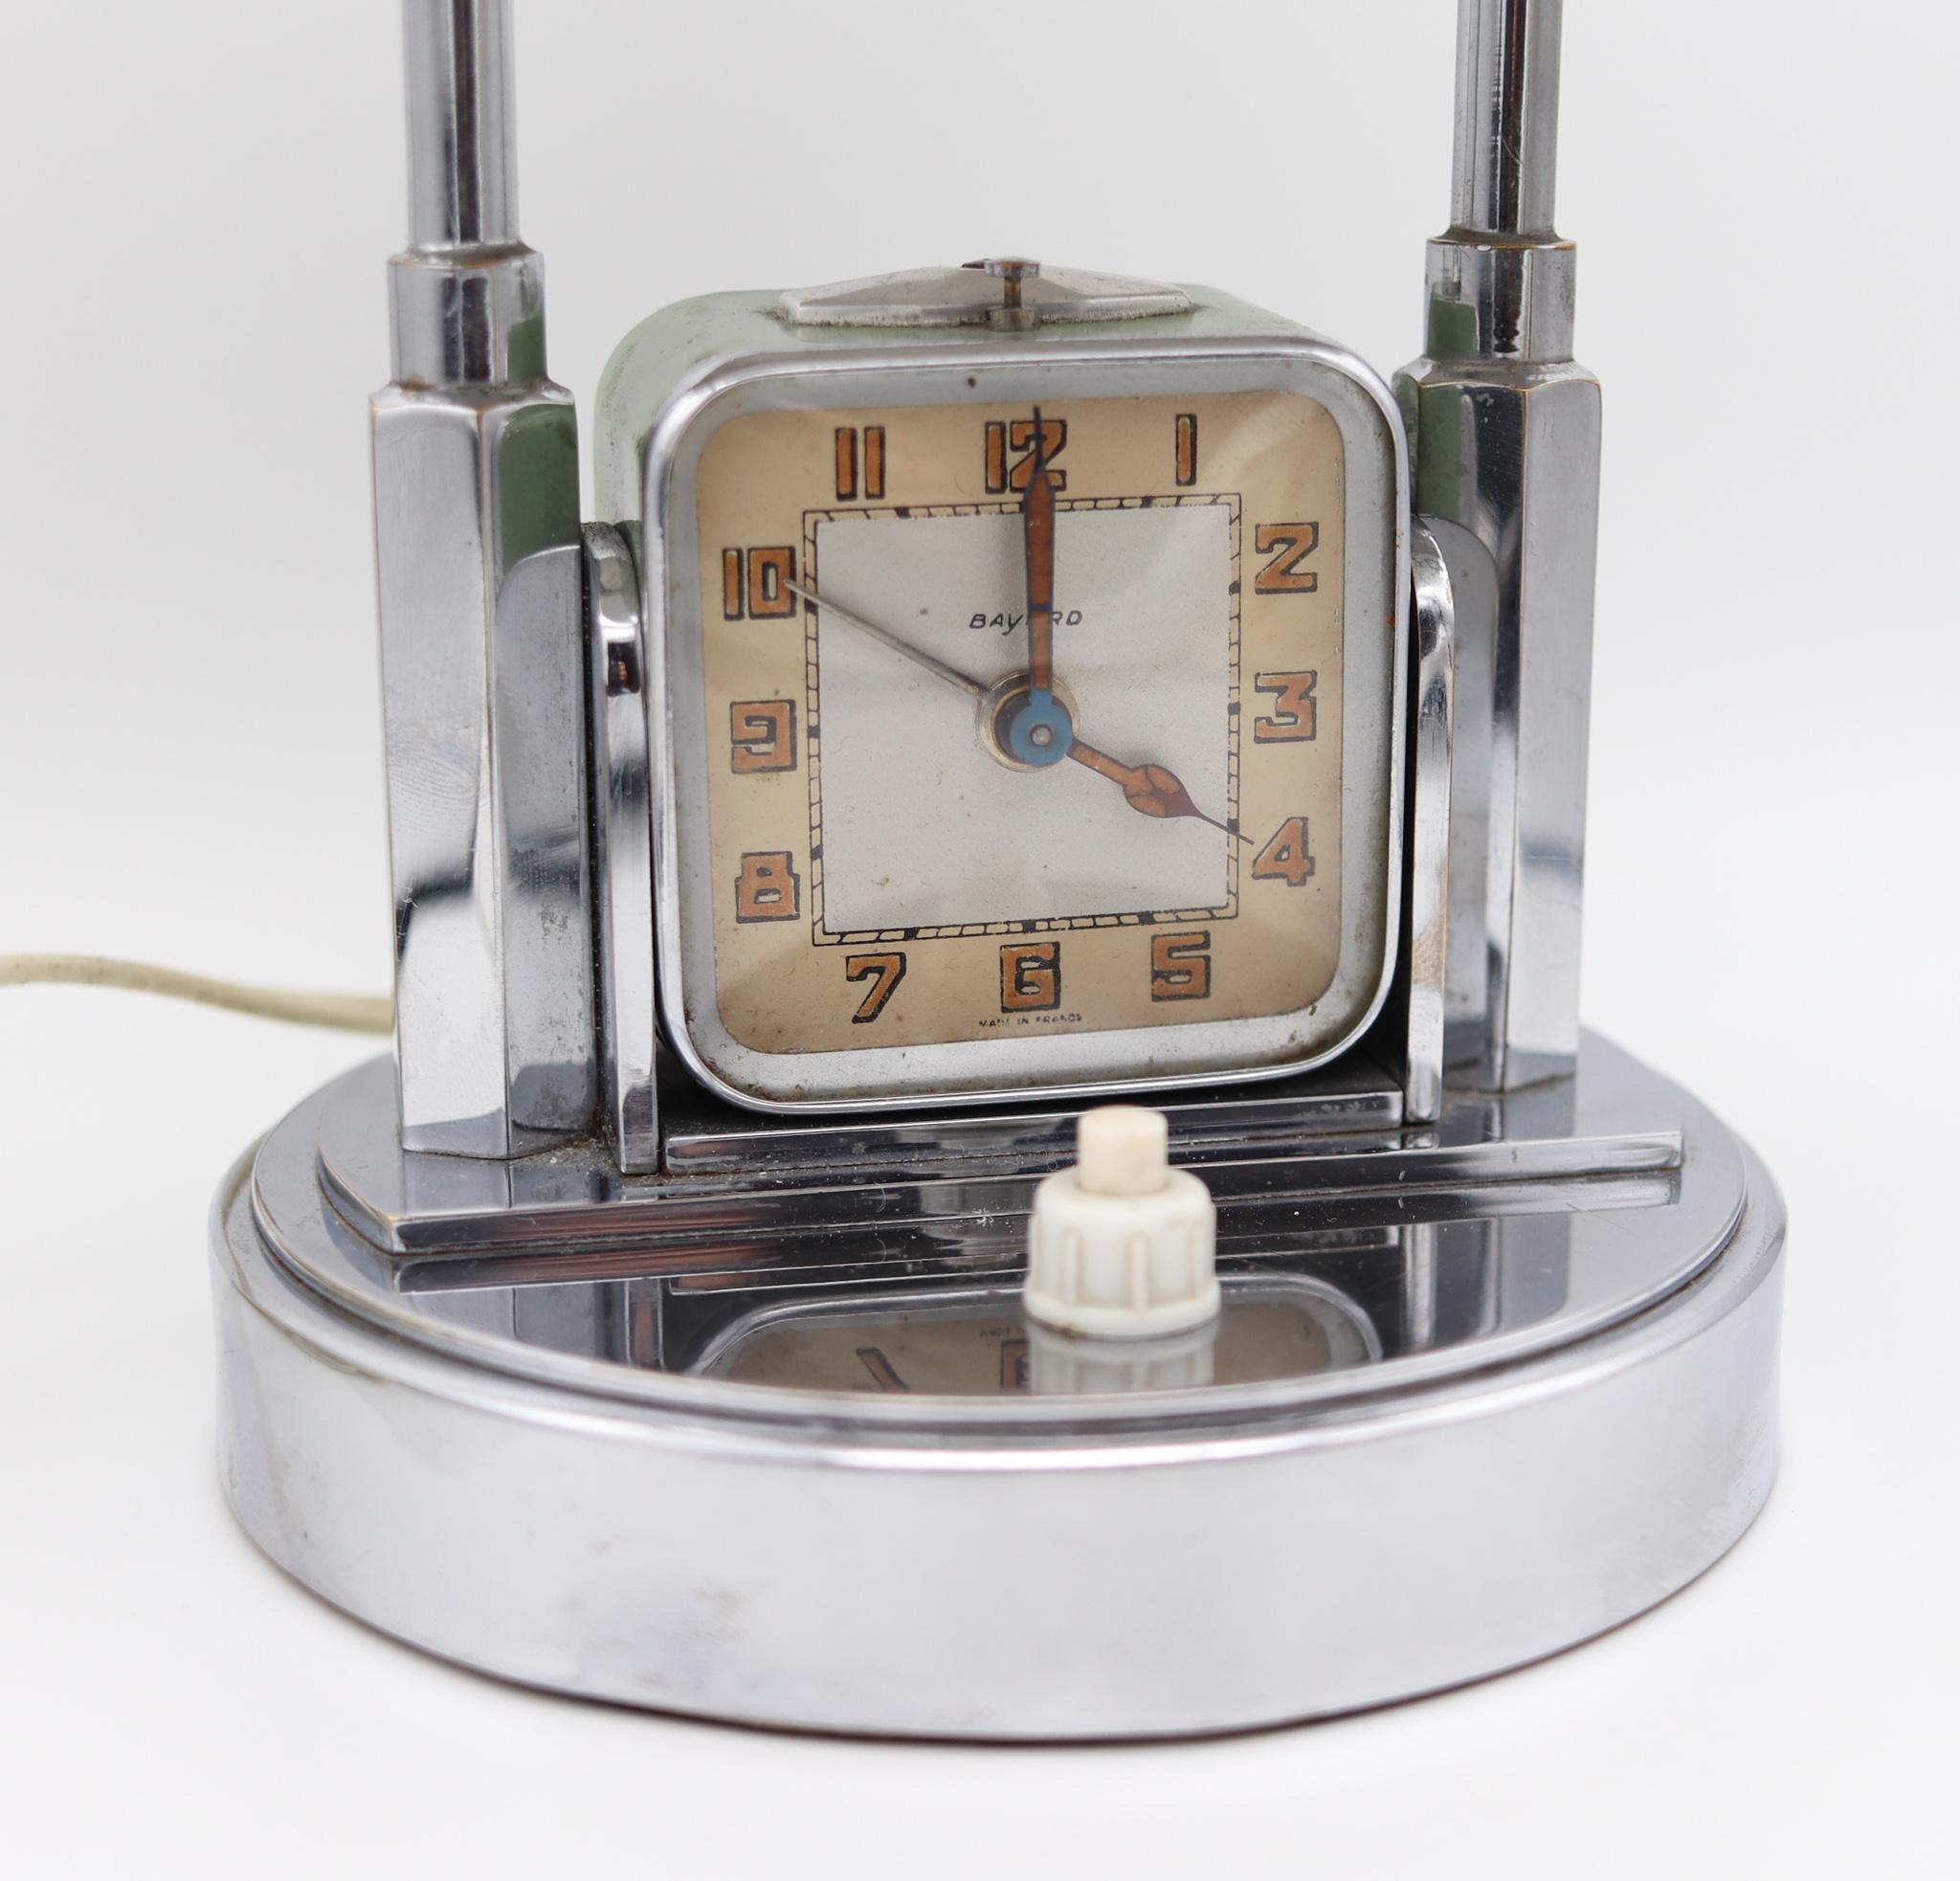 Une horloge lampe de bureau conçue par Bayard France.

Fabuleuse et très belle lampe-horloge de bureau intégrée, créée à Paris par la société Bayard pendant la période art déco, dans les années 1930. Cette pièce très décorative et utile est très